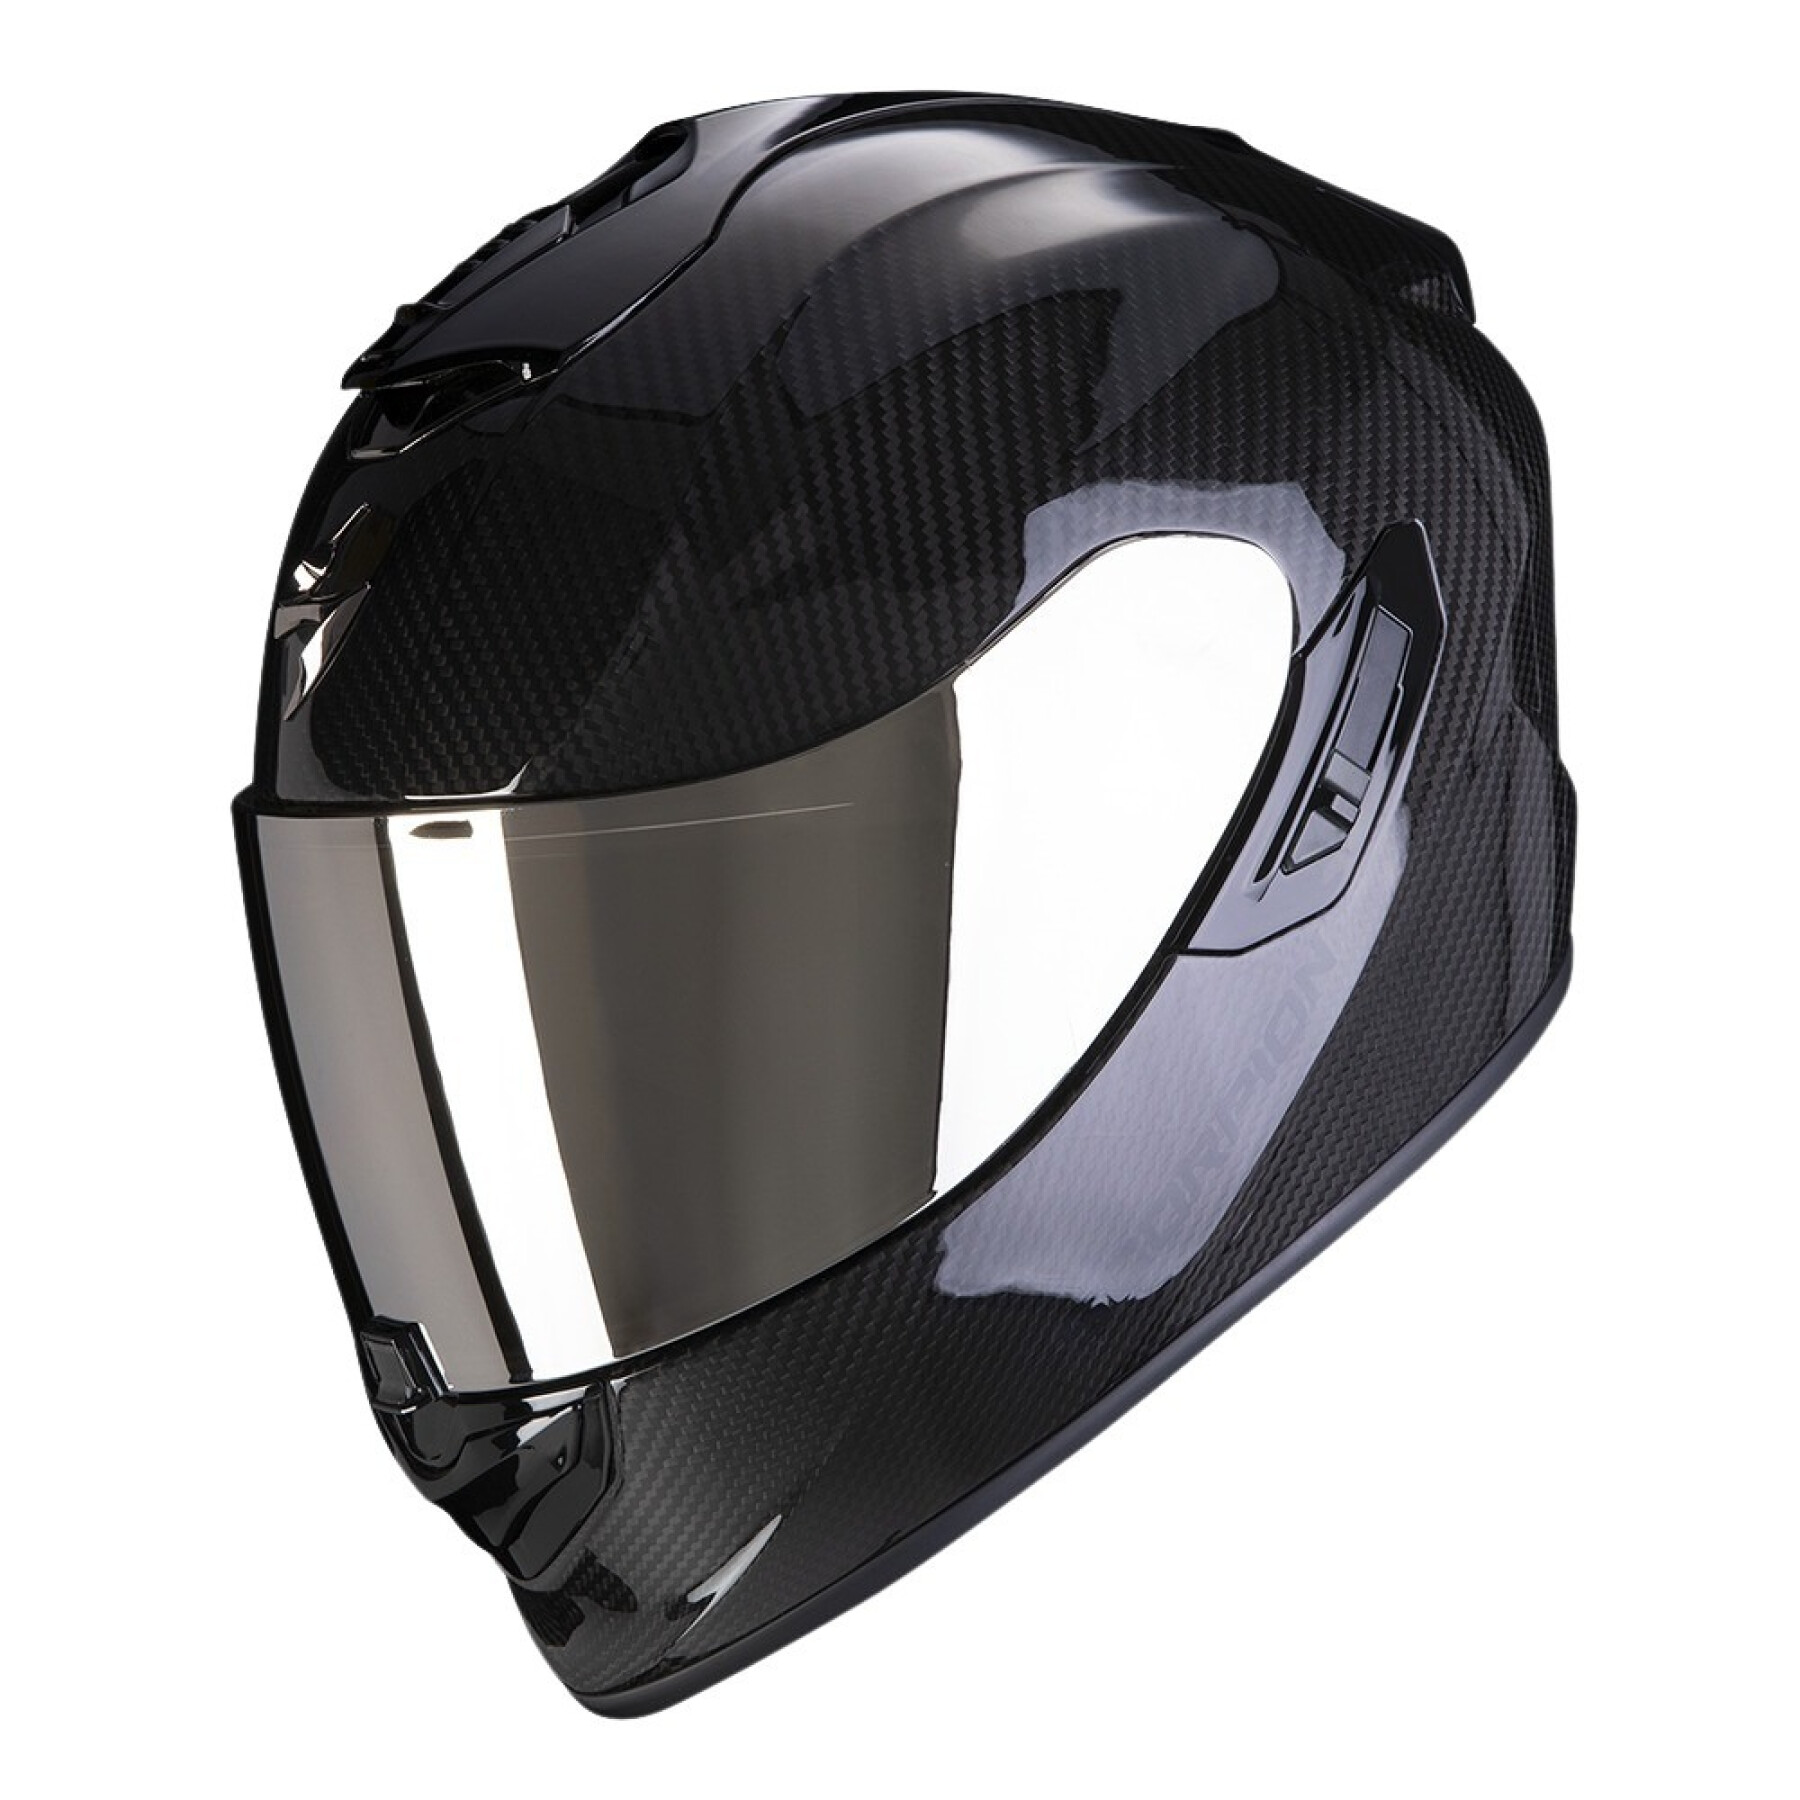 Full face motorcycle helmet Scorpion Exo 1400 Evo II Air